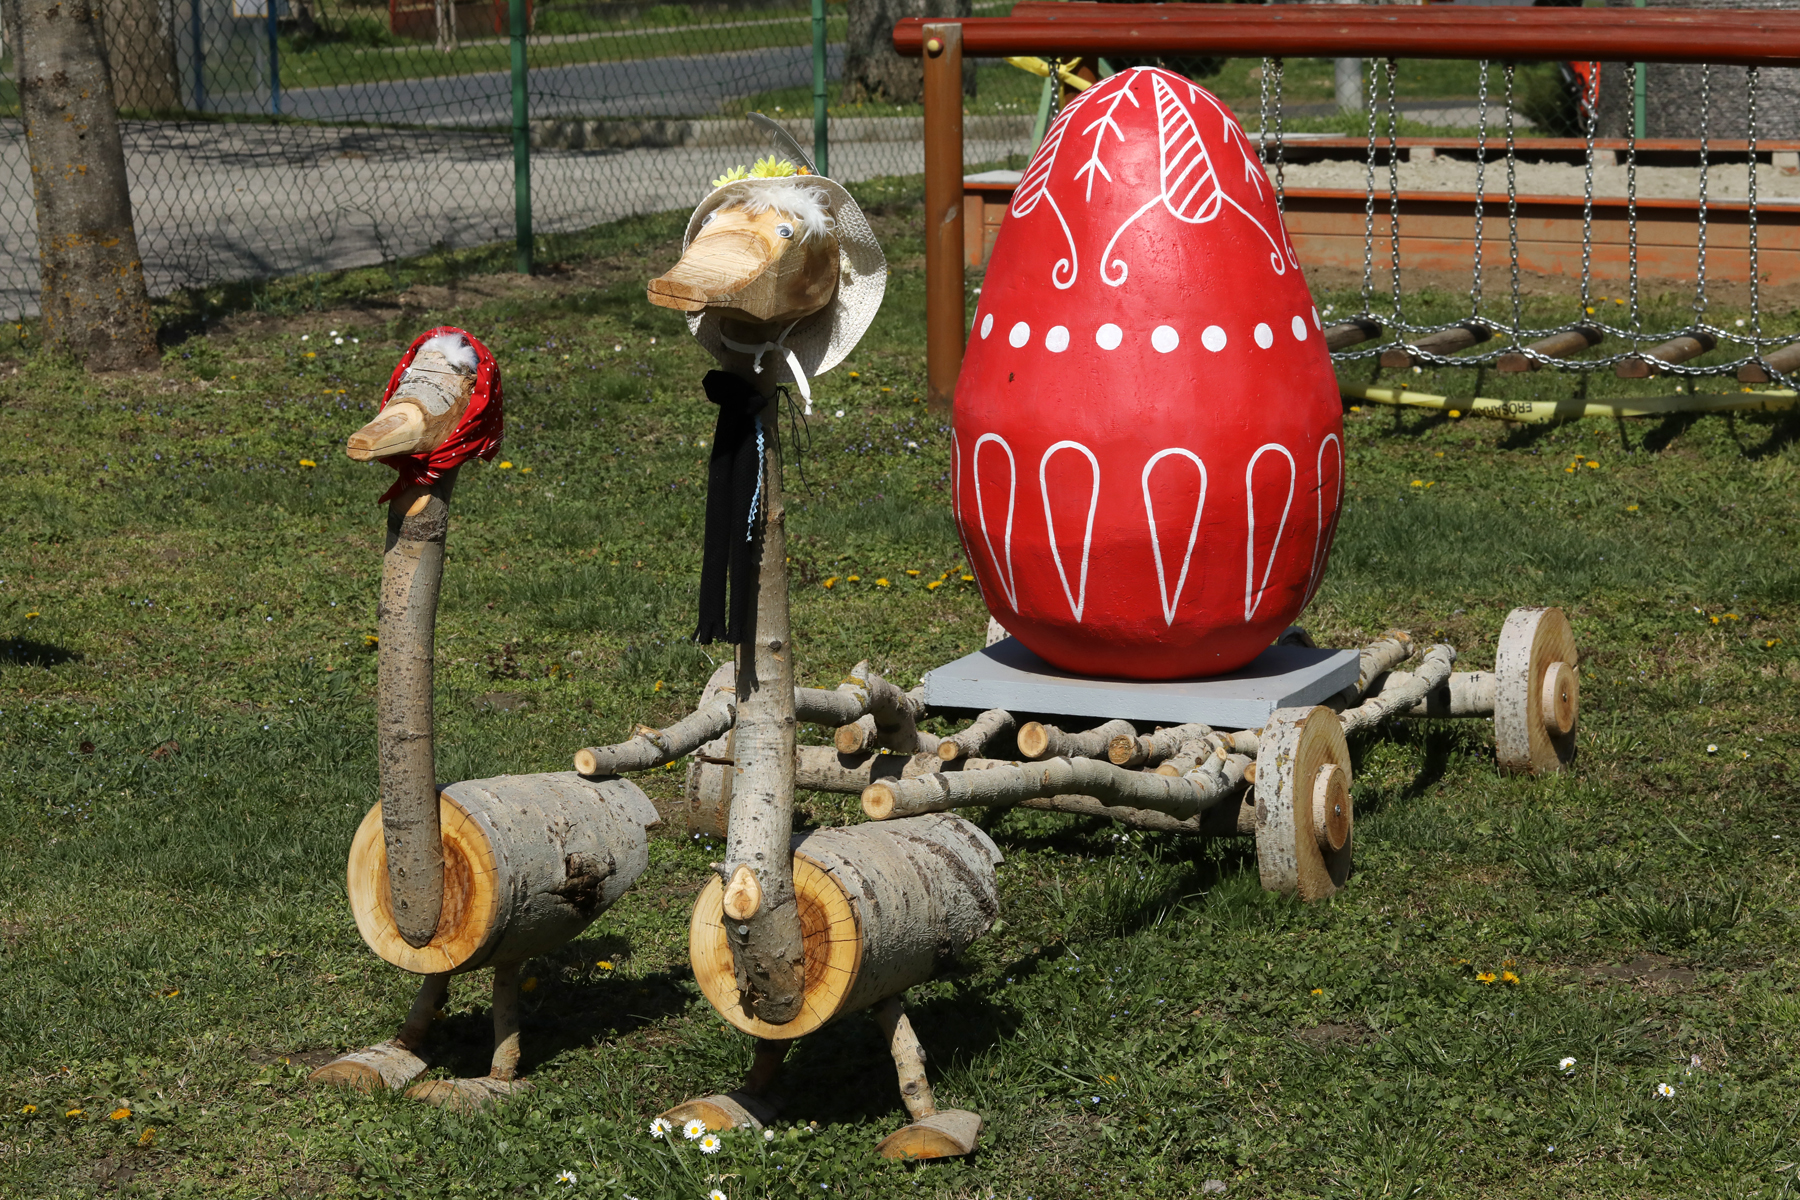 Húsvéti játszótér Balatonberényben